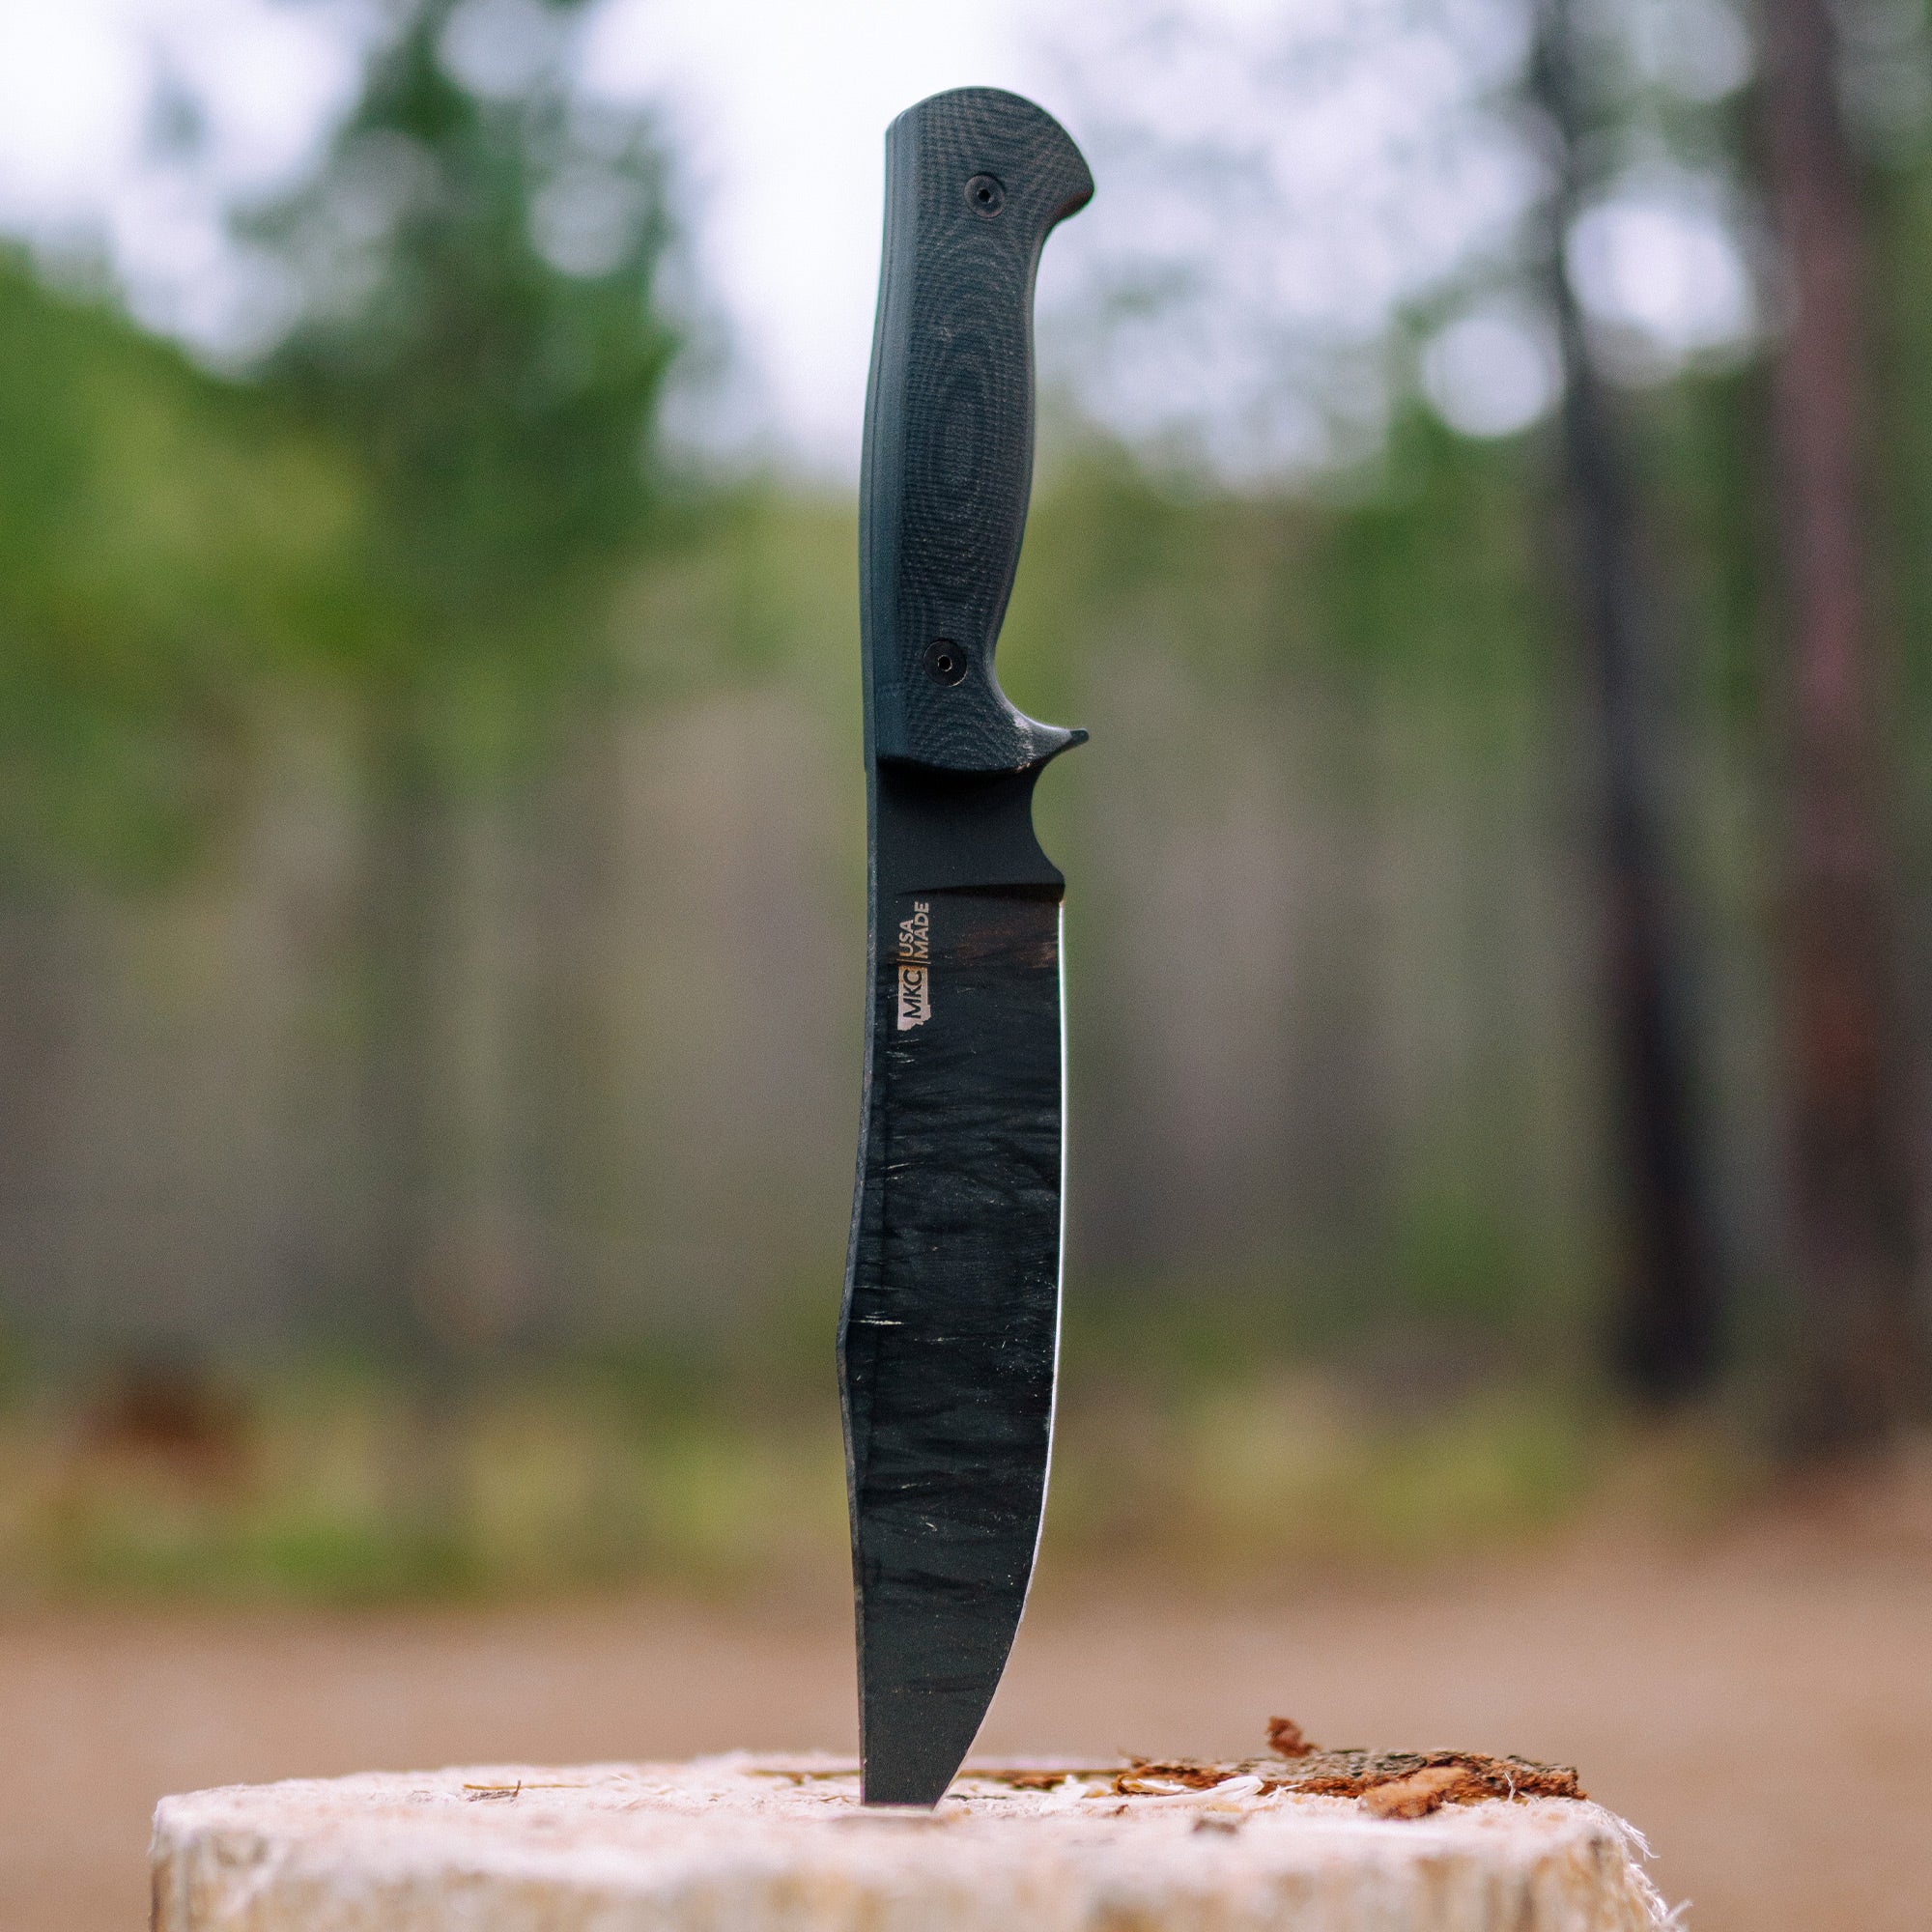 THE MARSHALL BUSHCRAFT KNIFE - BLACK